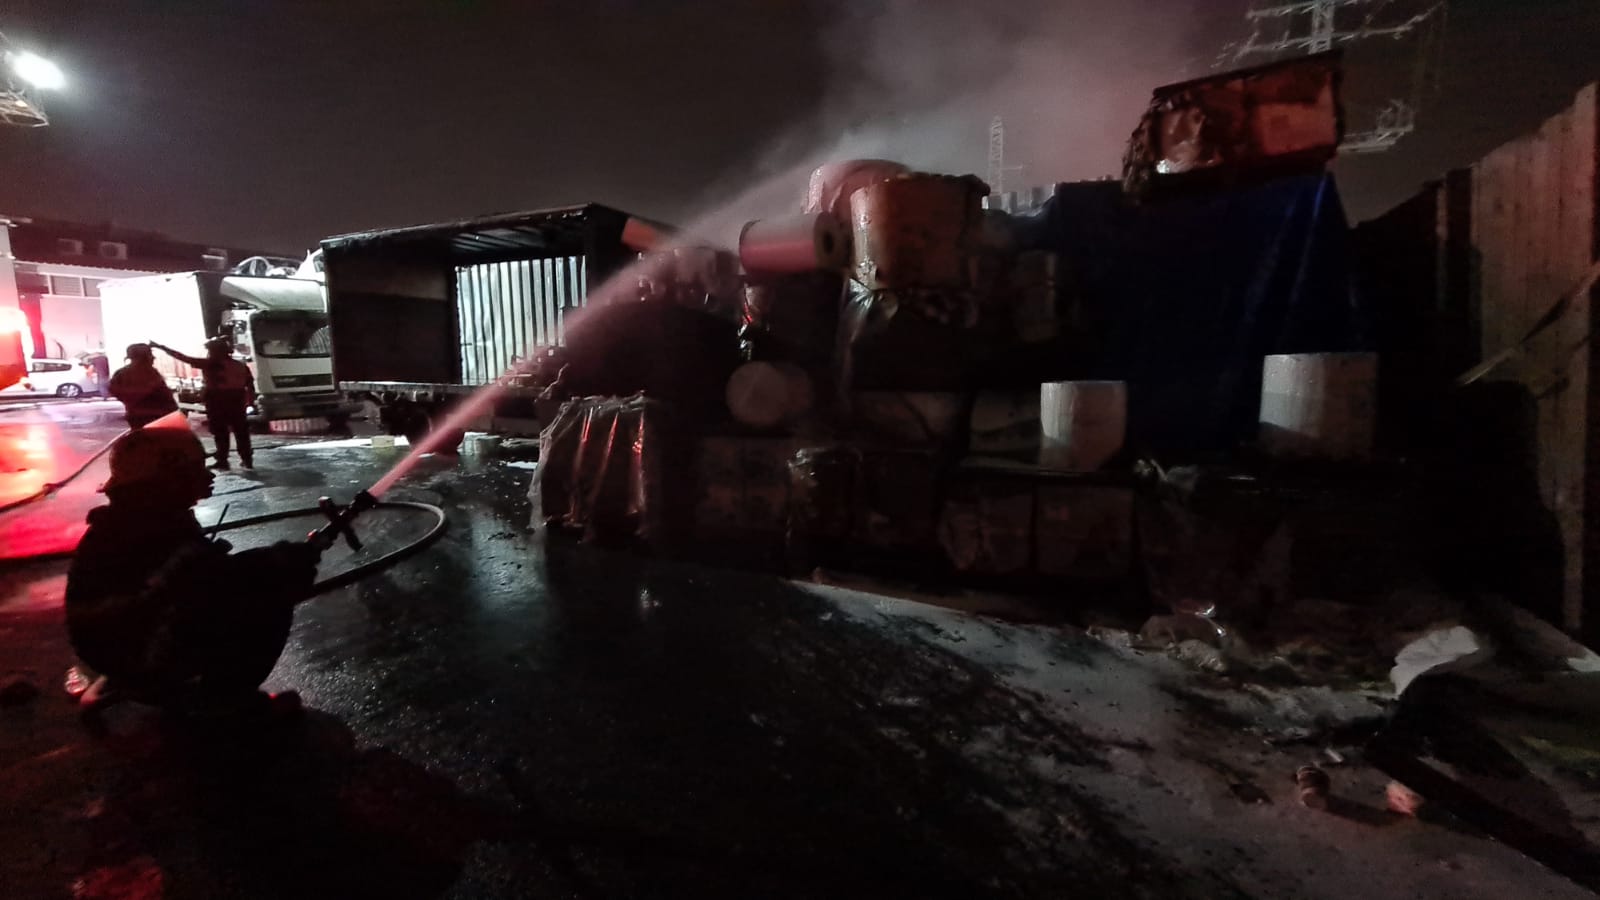  فيديو: حريق ضخم داخل مصف للسيارات في المنطقة الصناعية بمدينة اللد